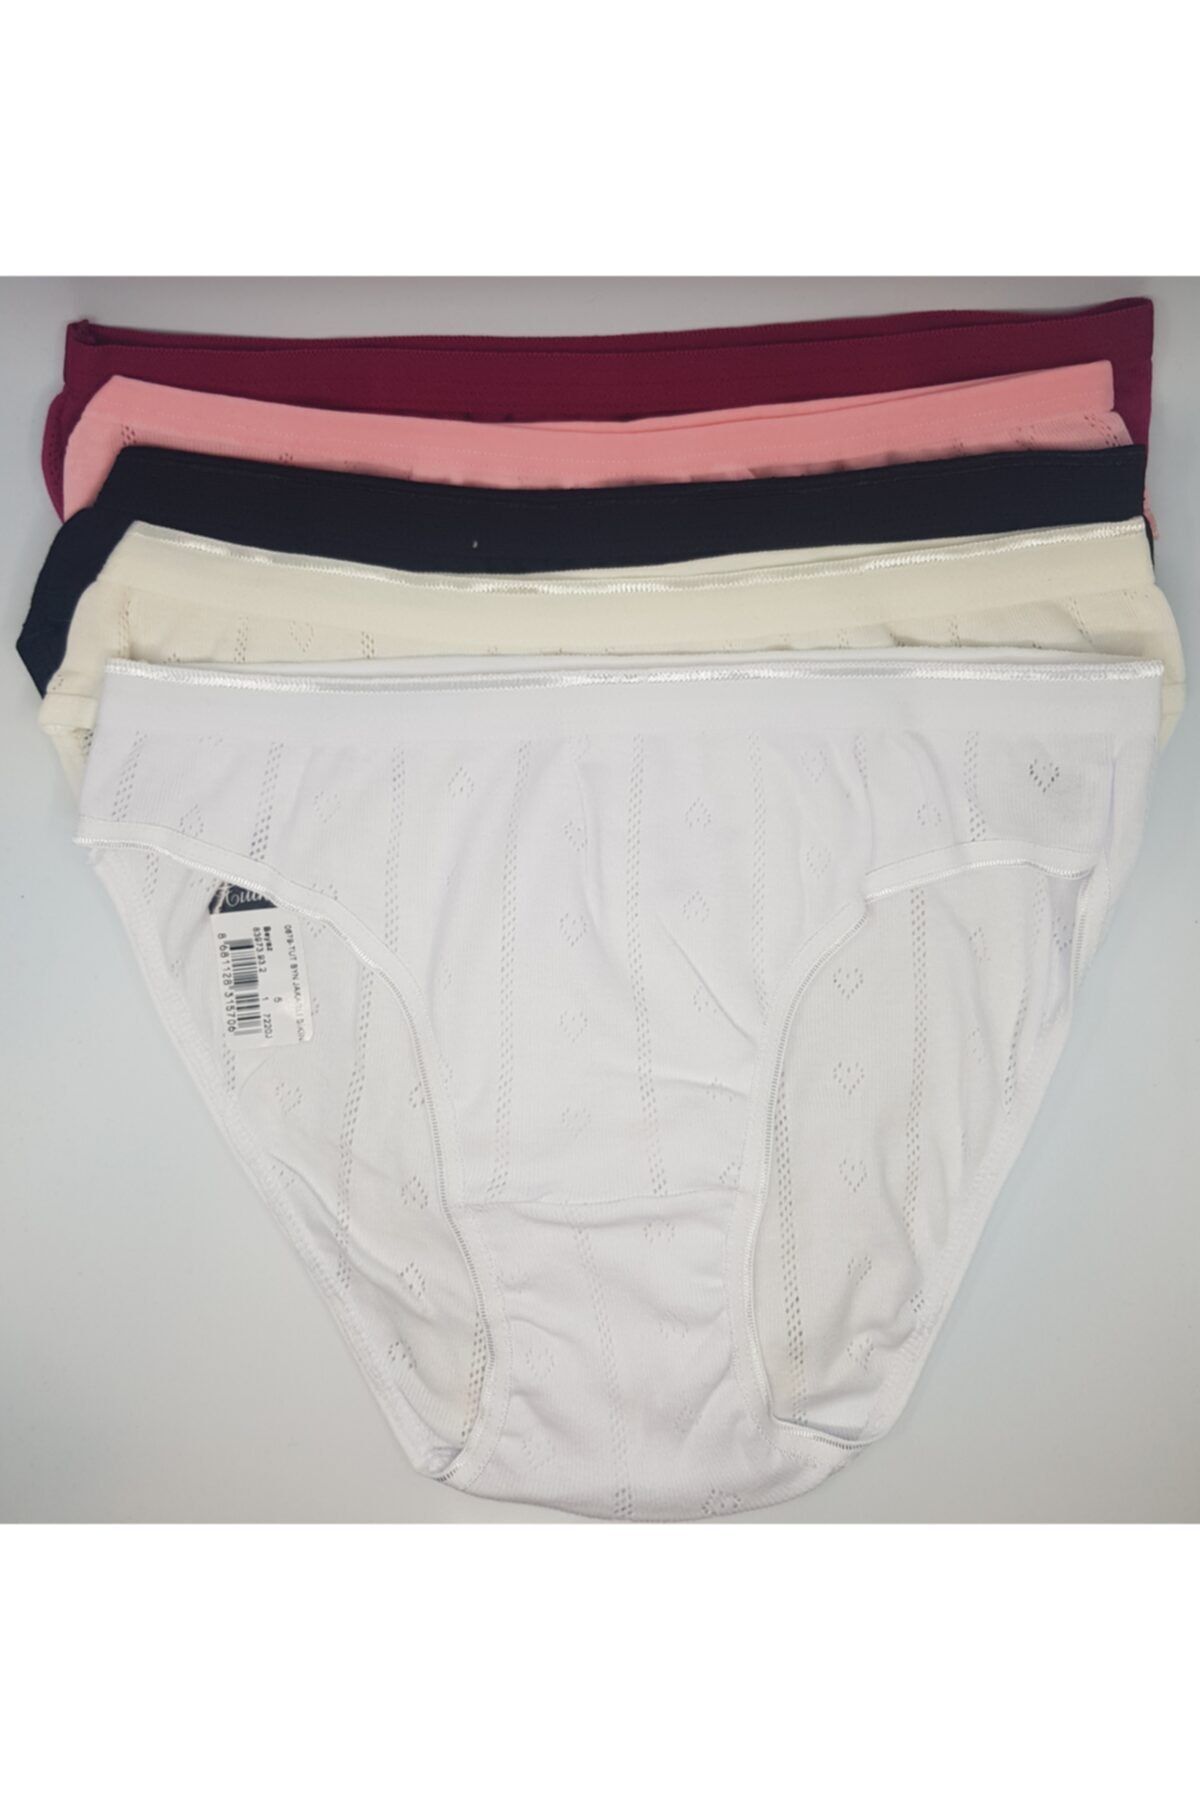 Tutku Kadın Jakarlı Karışık Renk 9'lu Paket Bikini Külot Fua Shop 679